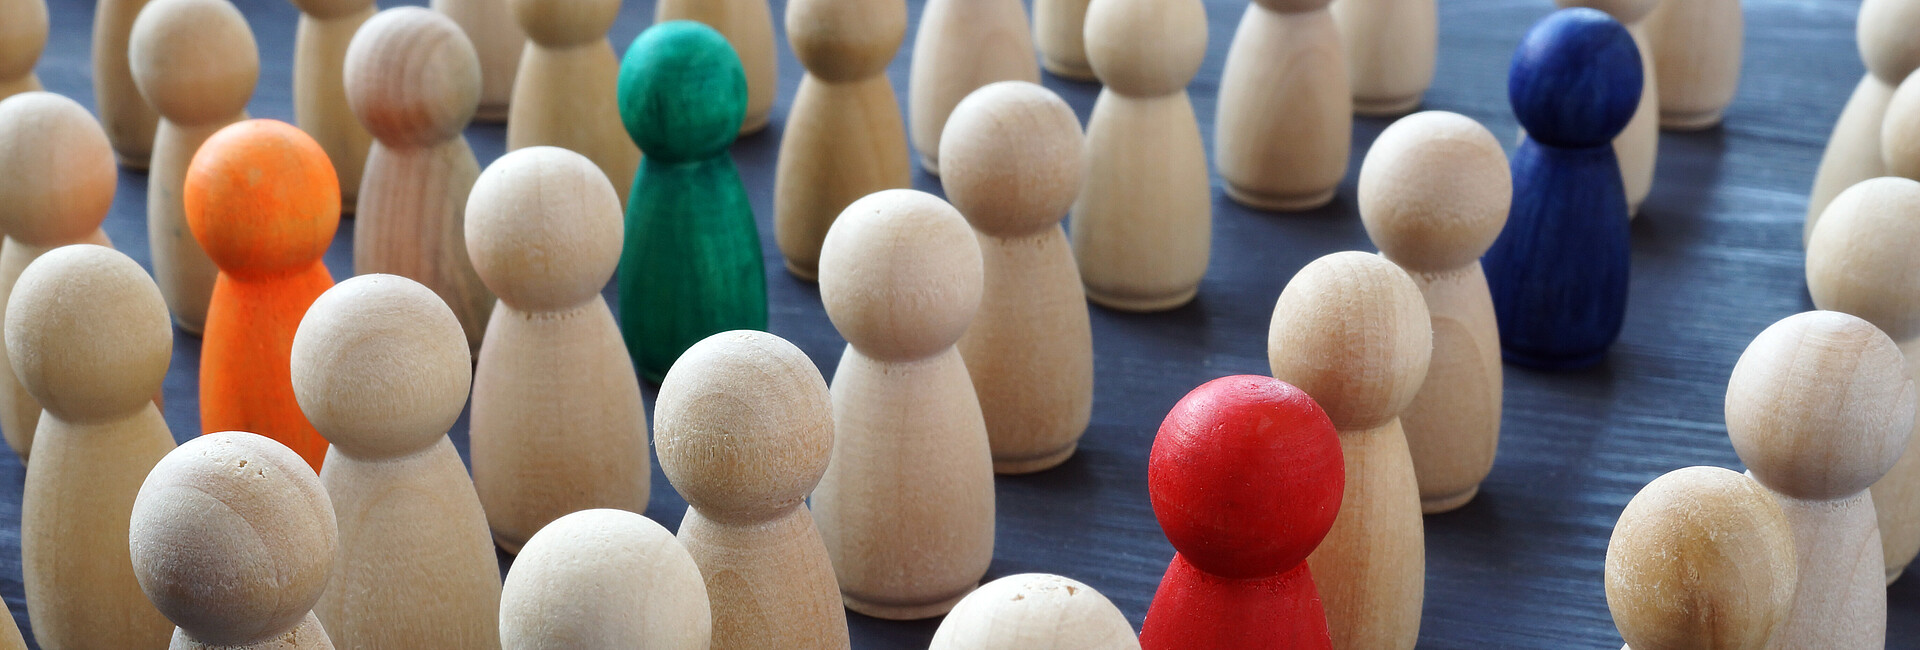 Gruppe von naturfarbenen Holzfiguren, in der 4 Figuren farbig hervorgehoben sind